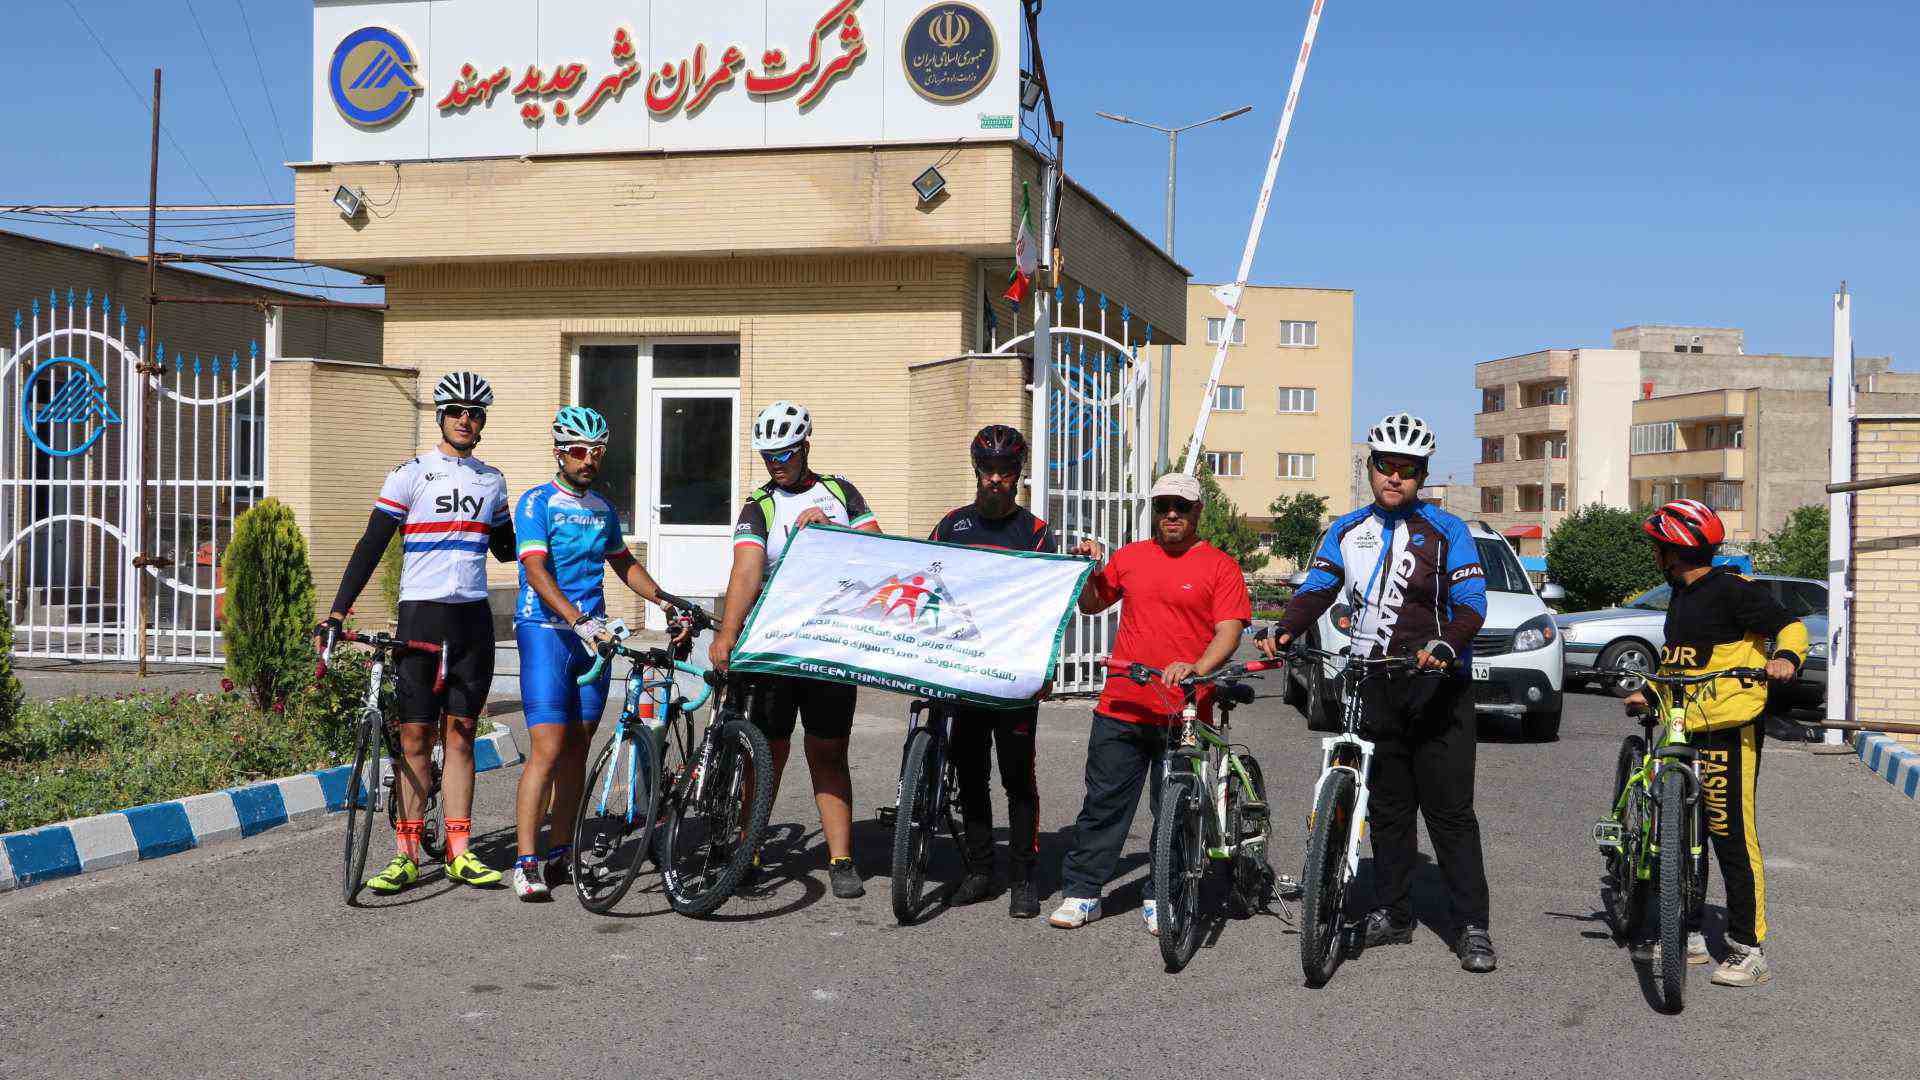 ترویج و توسعه دوچرخه سواری، هدف باشگاه سبزاندیش است